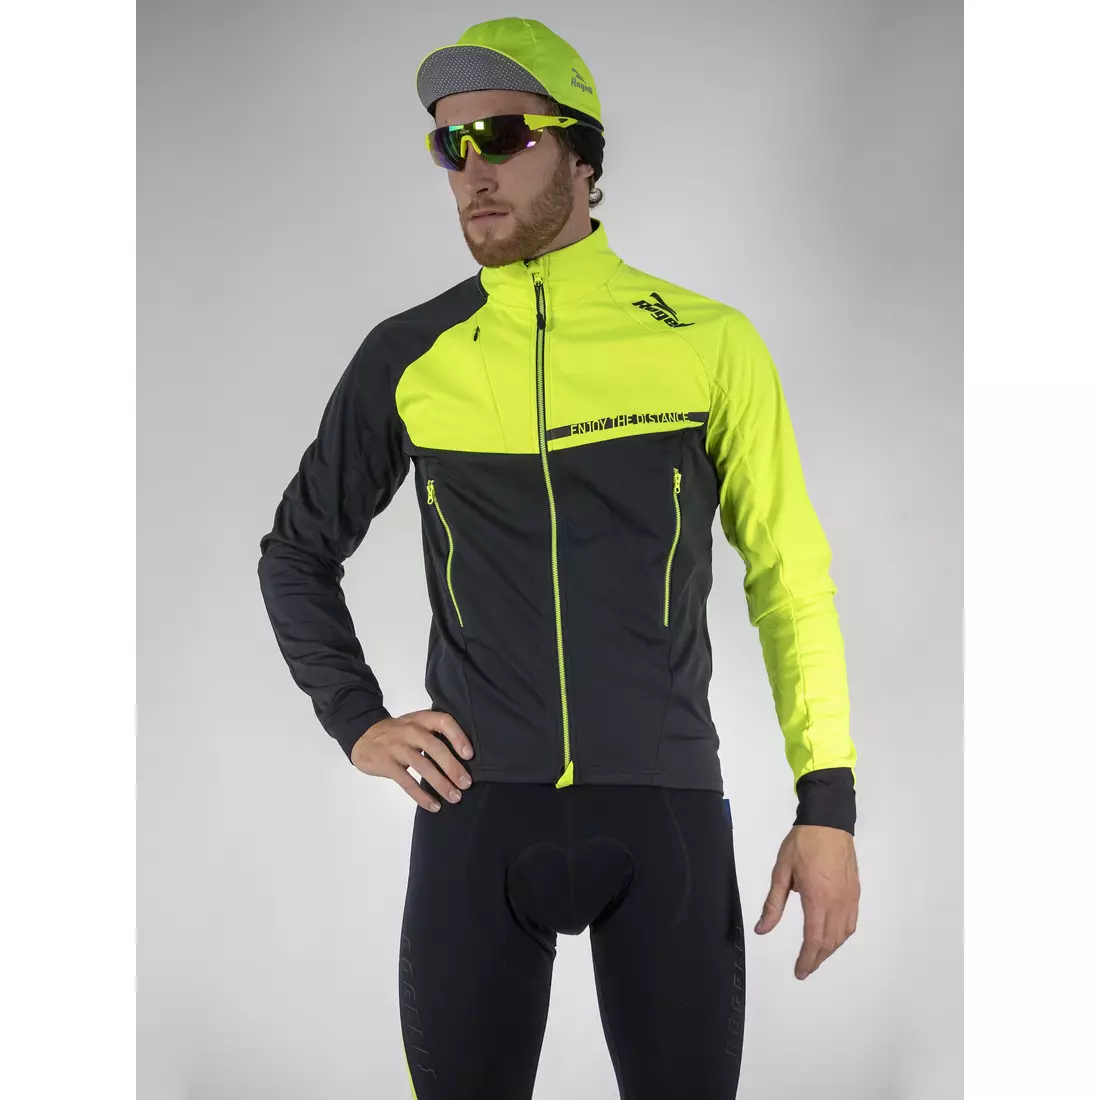 ROGELLI CONTENTO lehká zimní cyklistická bunda, softshellová, fluor žlutá